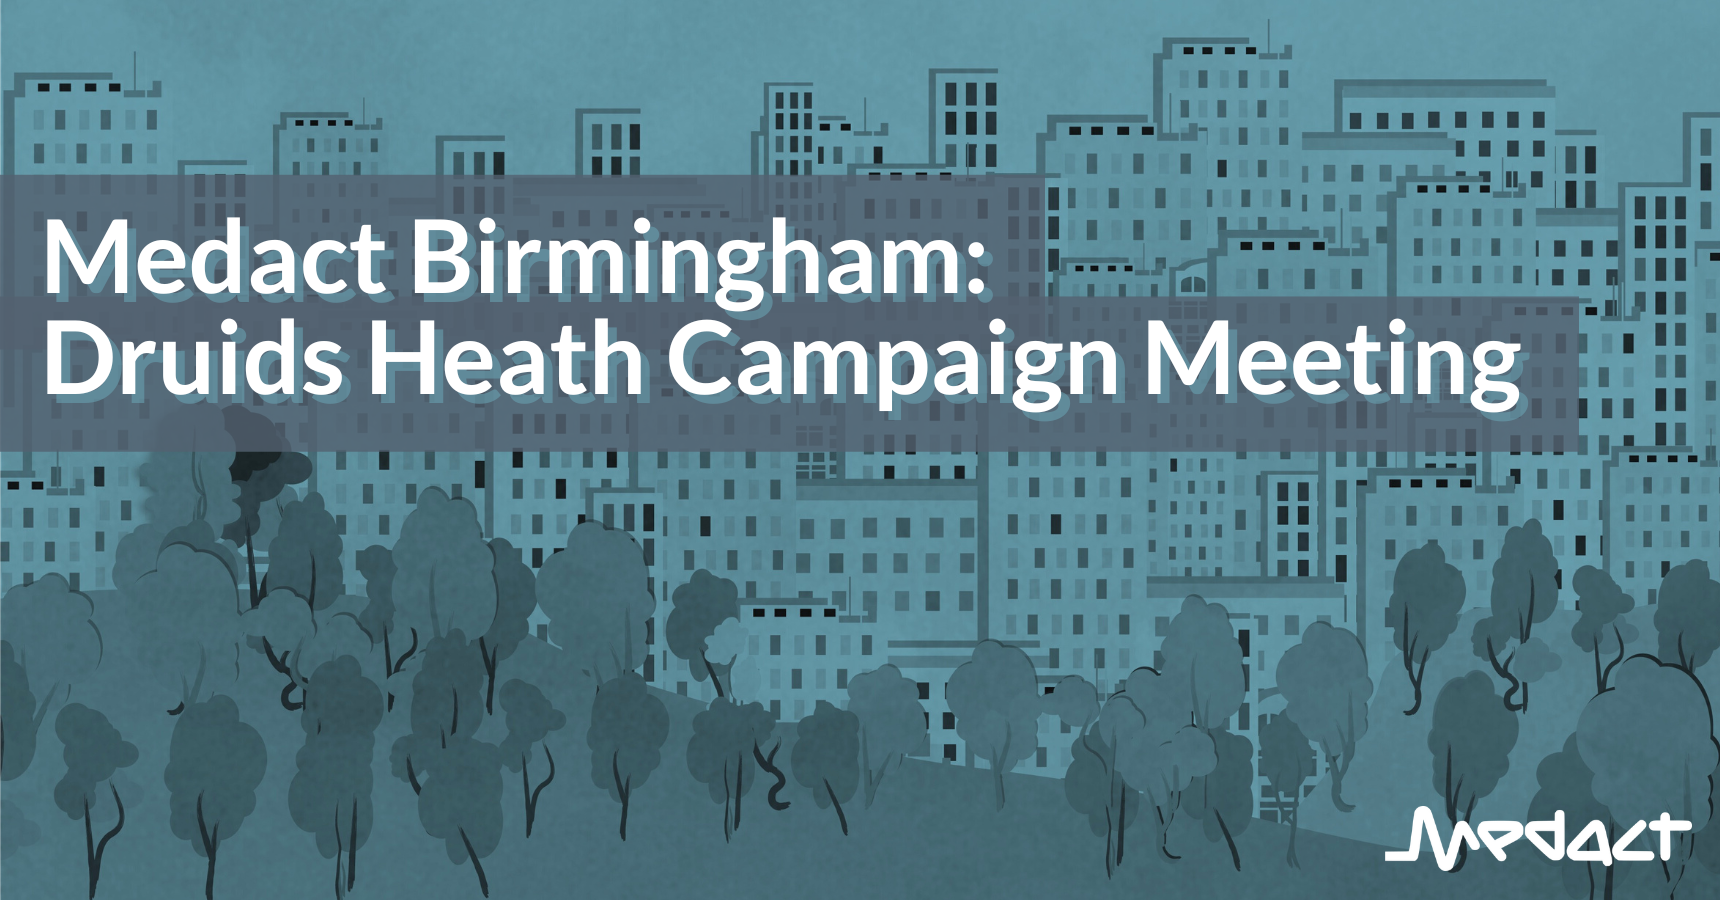 Medact Birmingham: Druids Heath Campaign Meeting